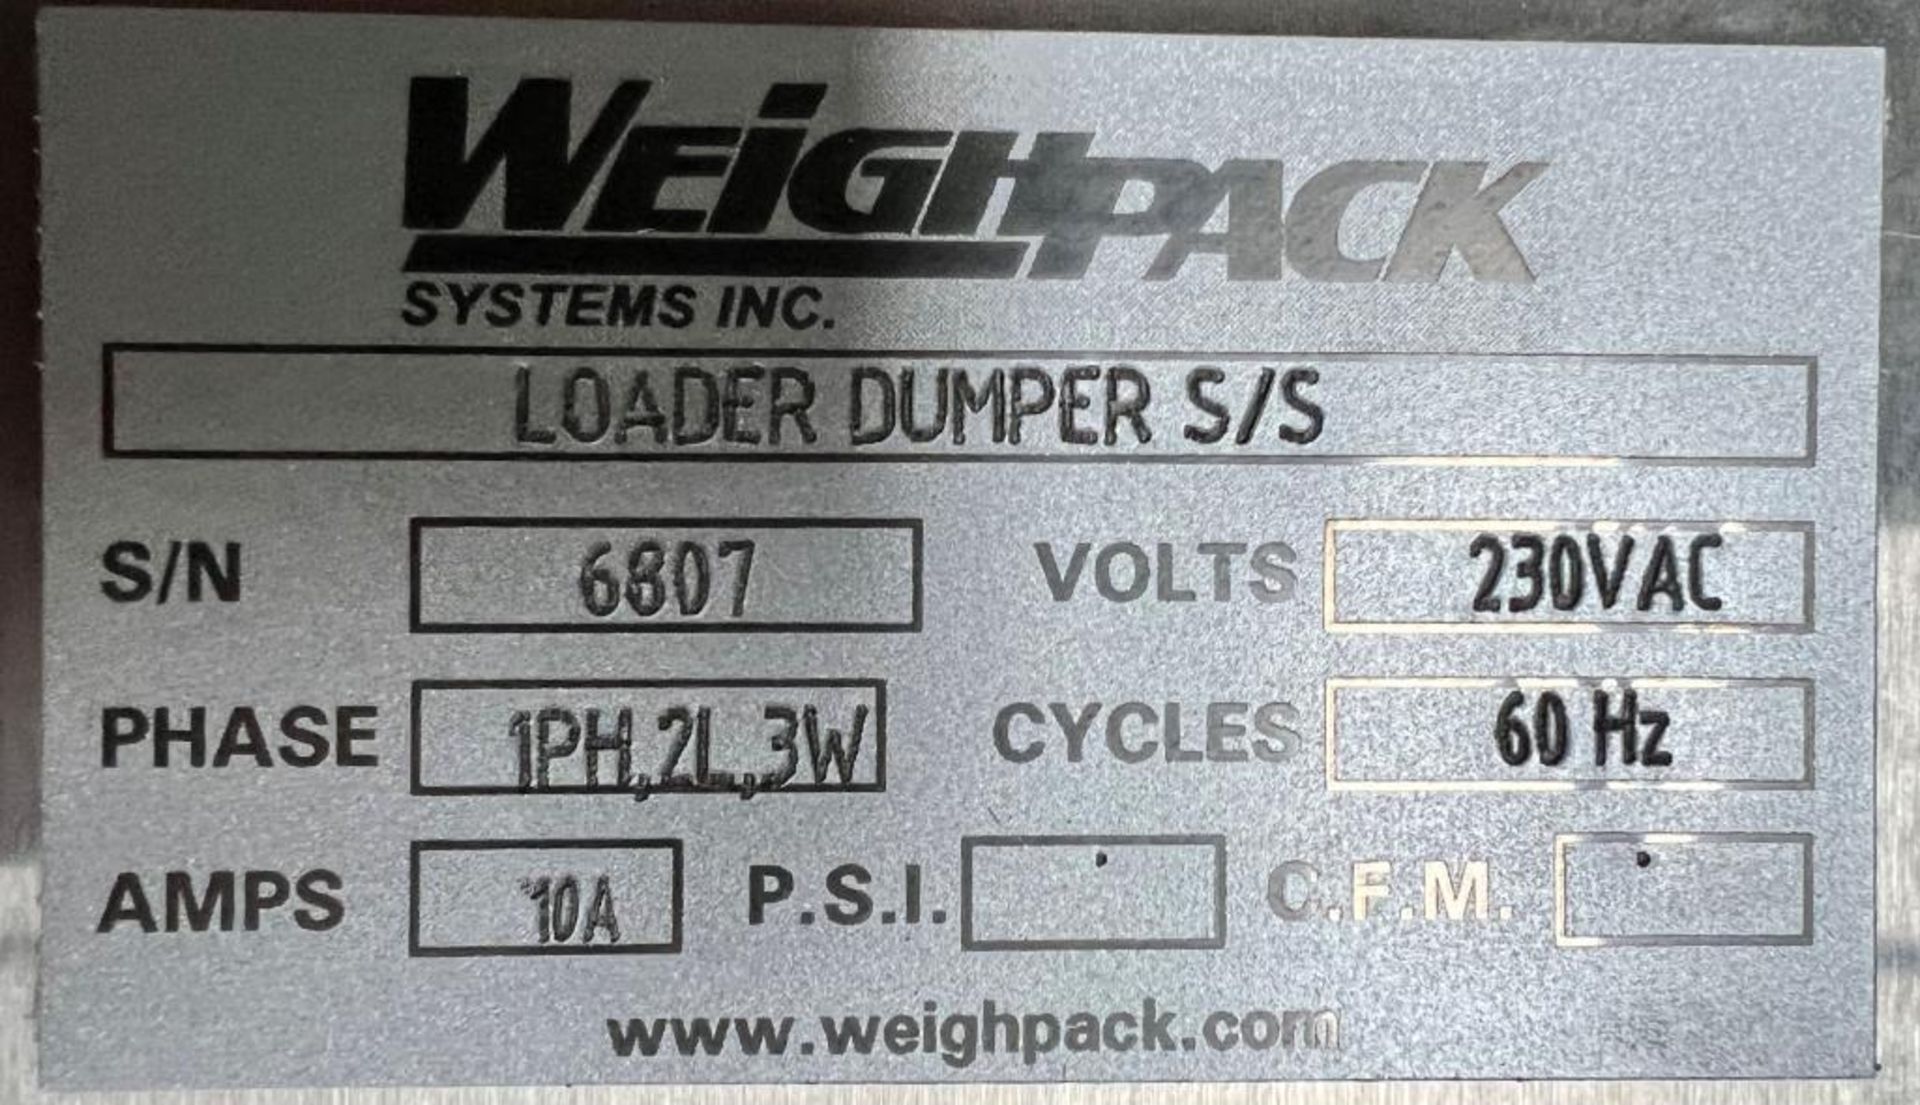 UNUSED WeighPack Stainless Steel Floor Mounted Column Loader Dumper, Serial# 6807. With cradle, buck - Image 10 of 10